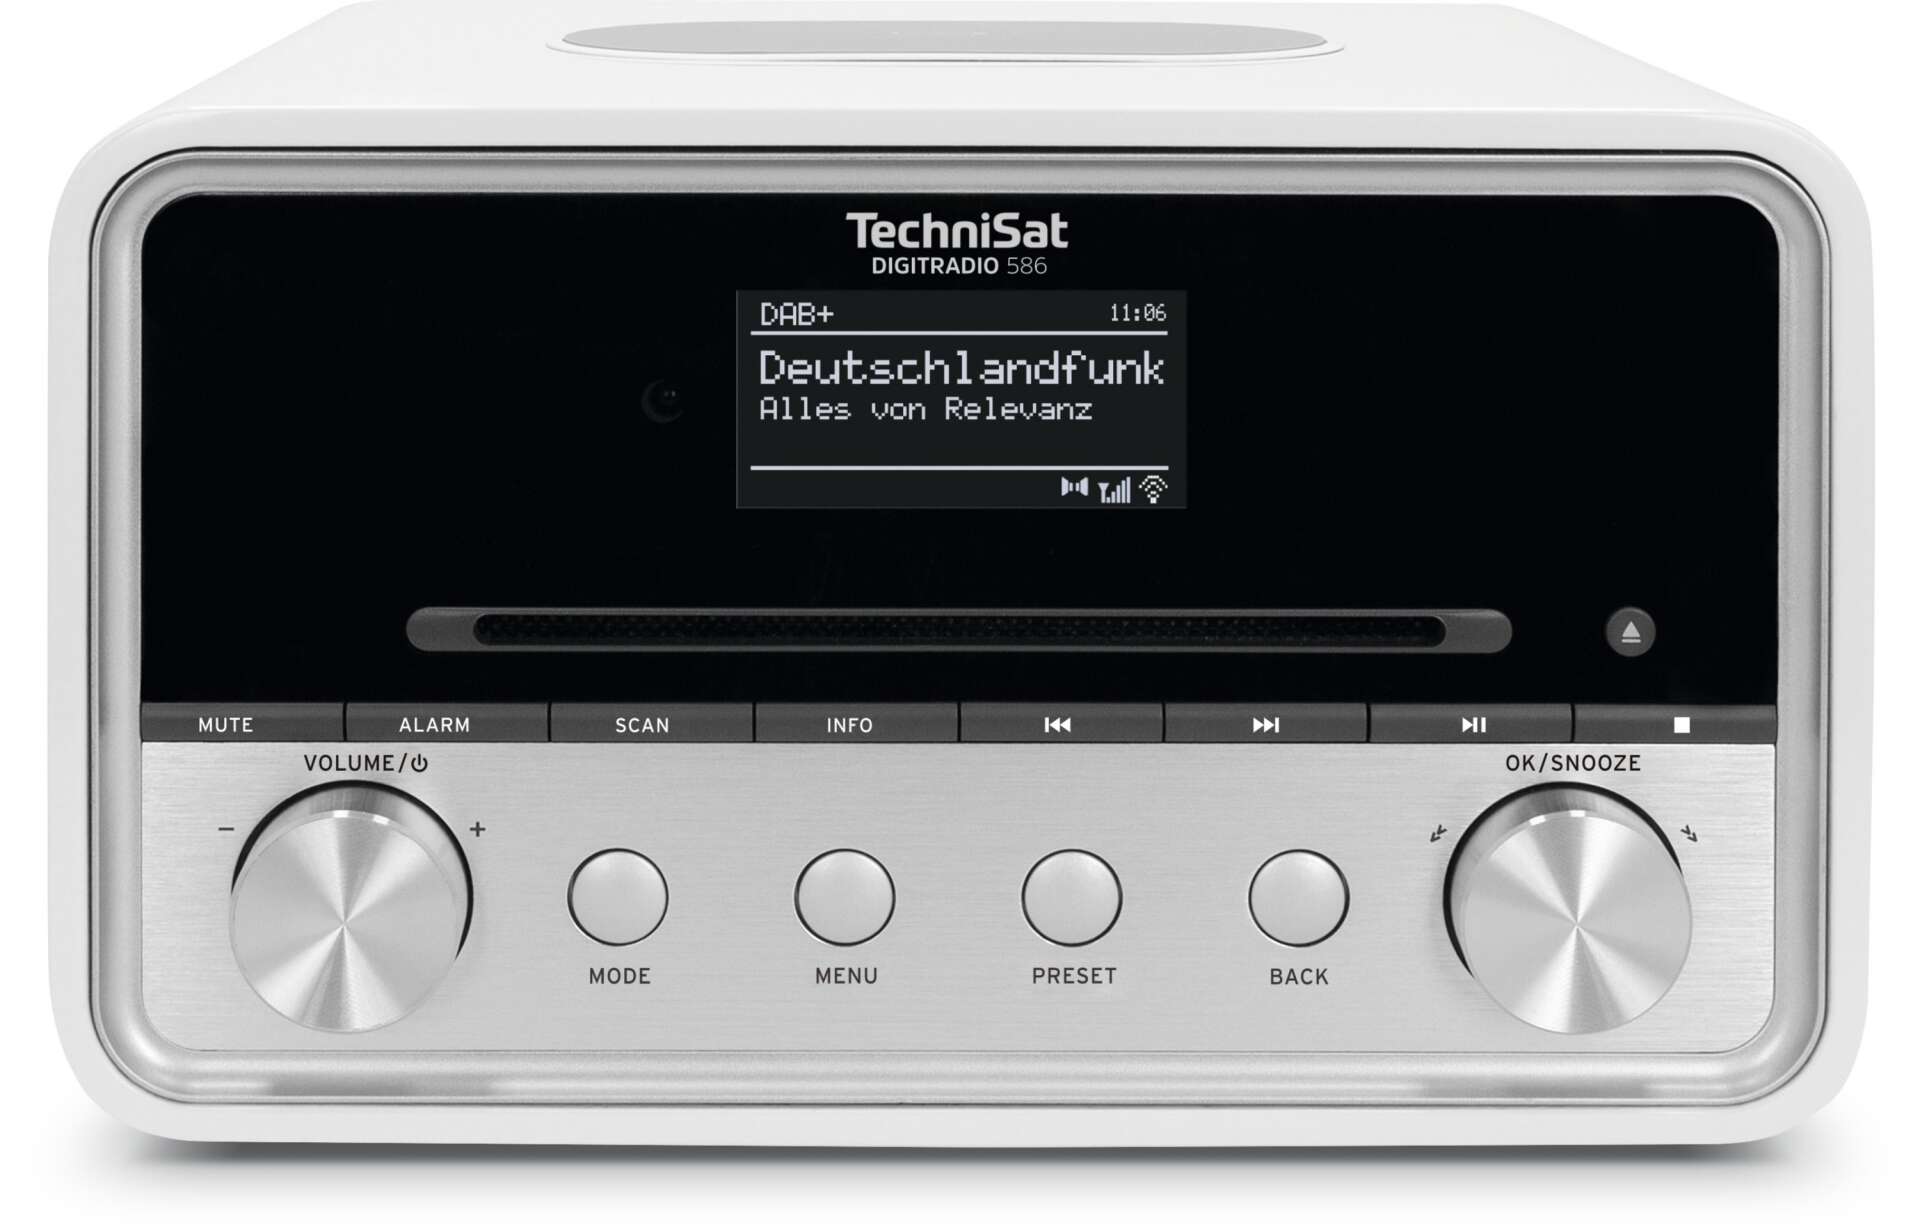 Technisat digitradio 586 rádió - fehér/ezüst